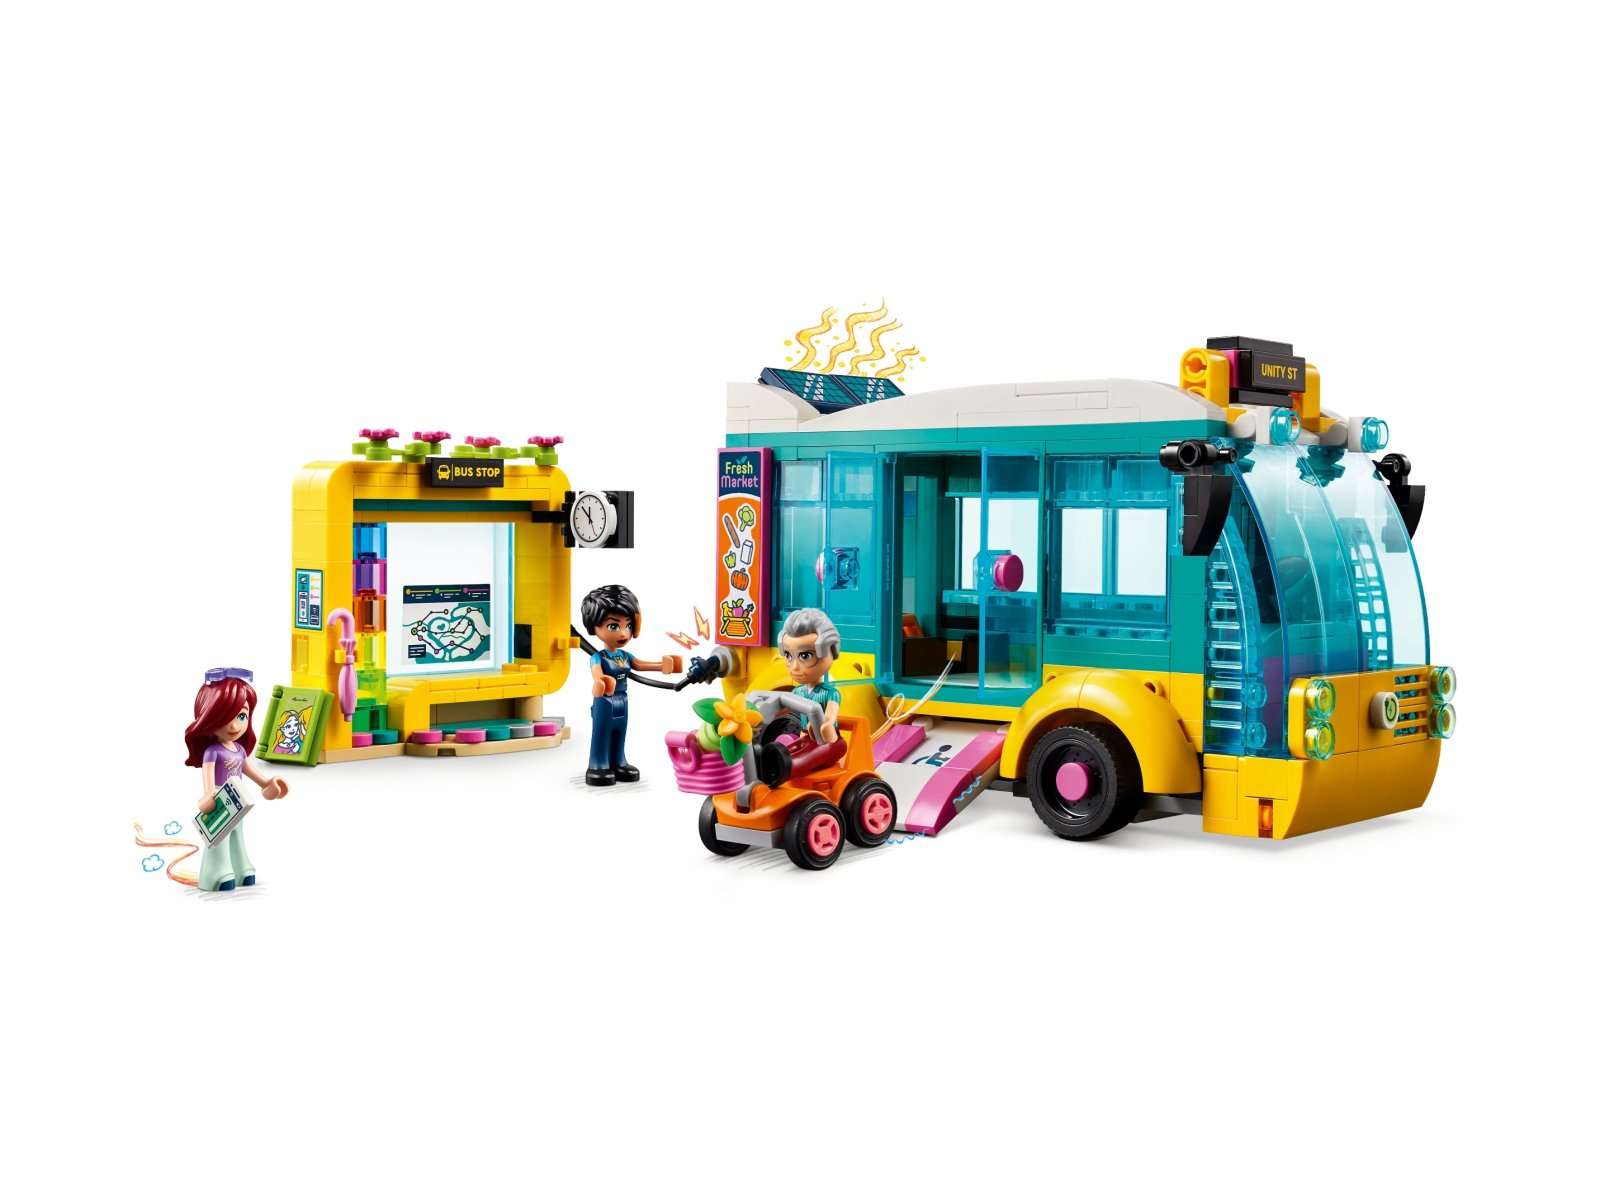 LEGO 41759 Friends Autobus miejski z Heartlake